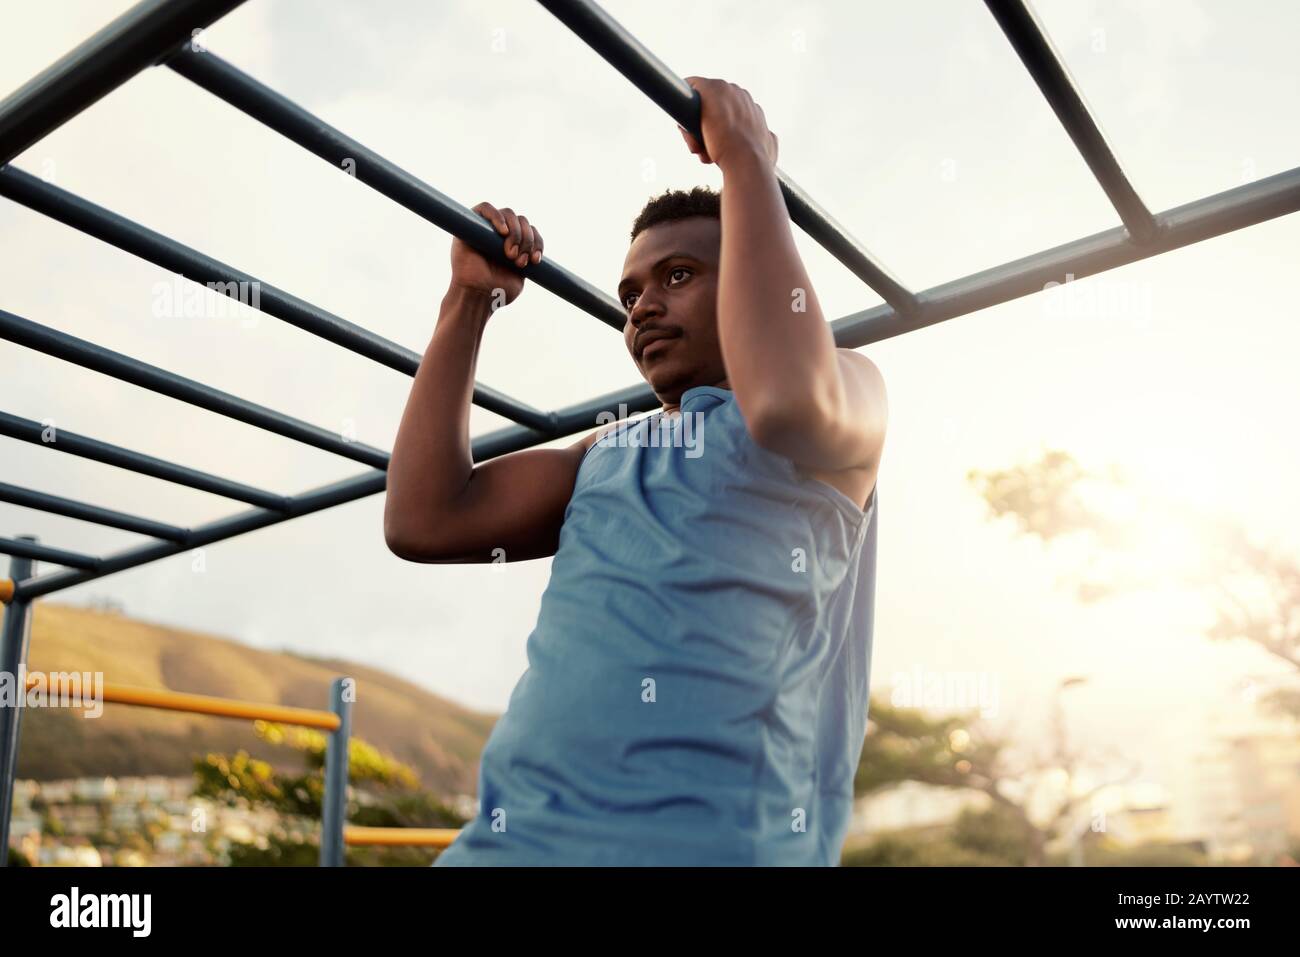 Un jeune homme d'afrique américain, musclé et athlétique, s'entraîner dans une salle de sport extérieure, en faisant des pull-ups Banque D'Images